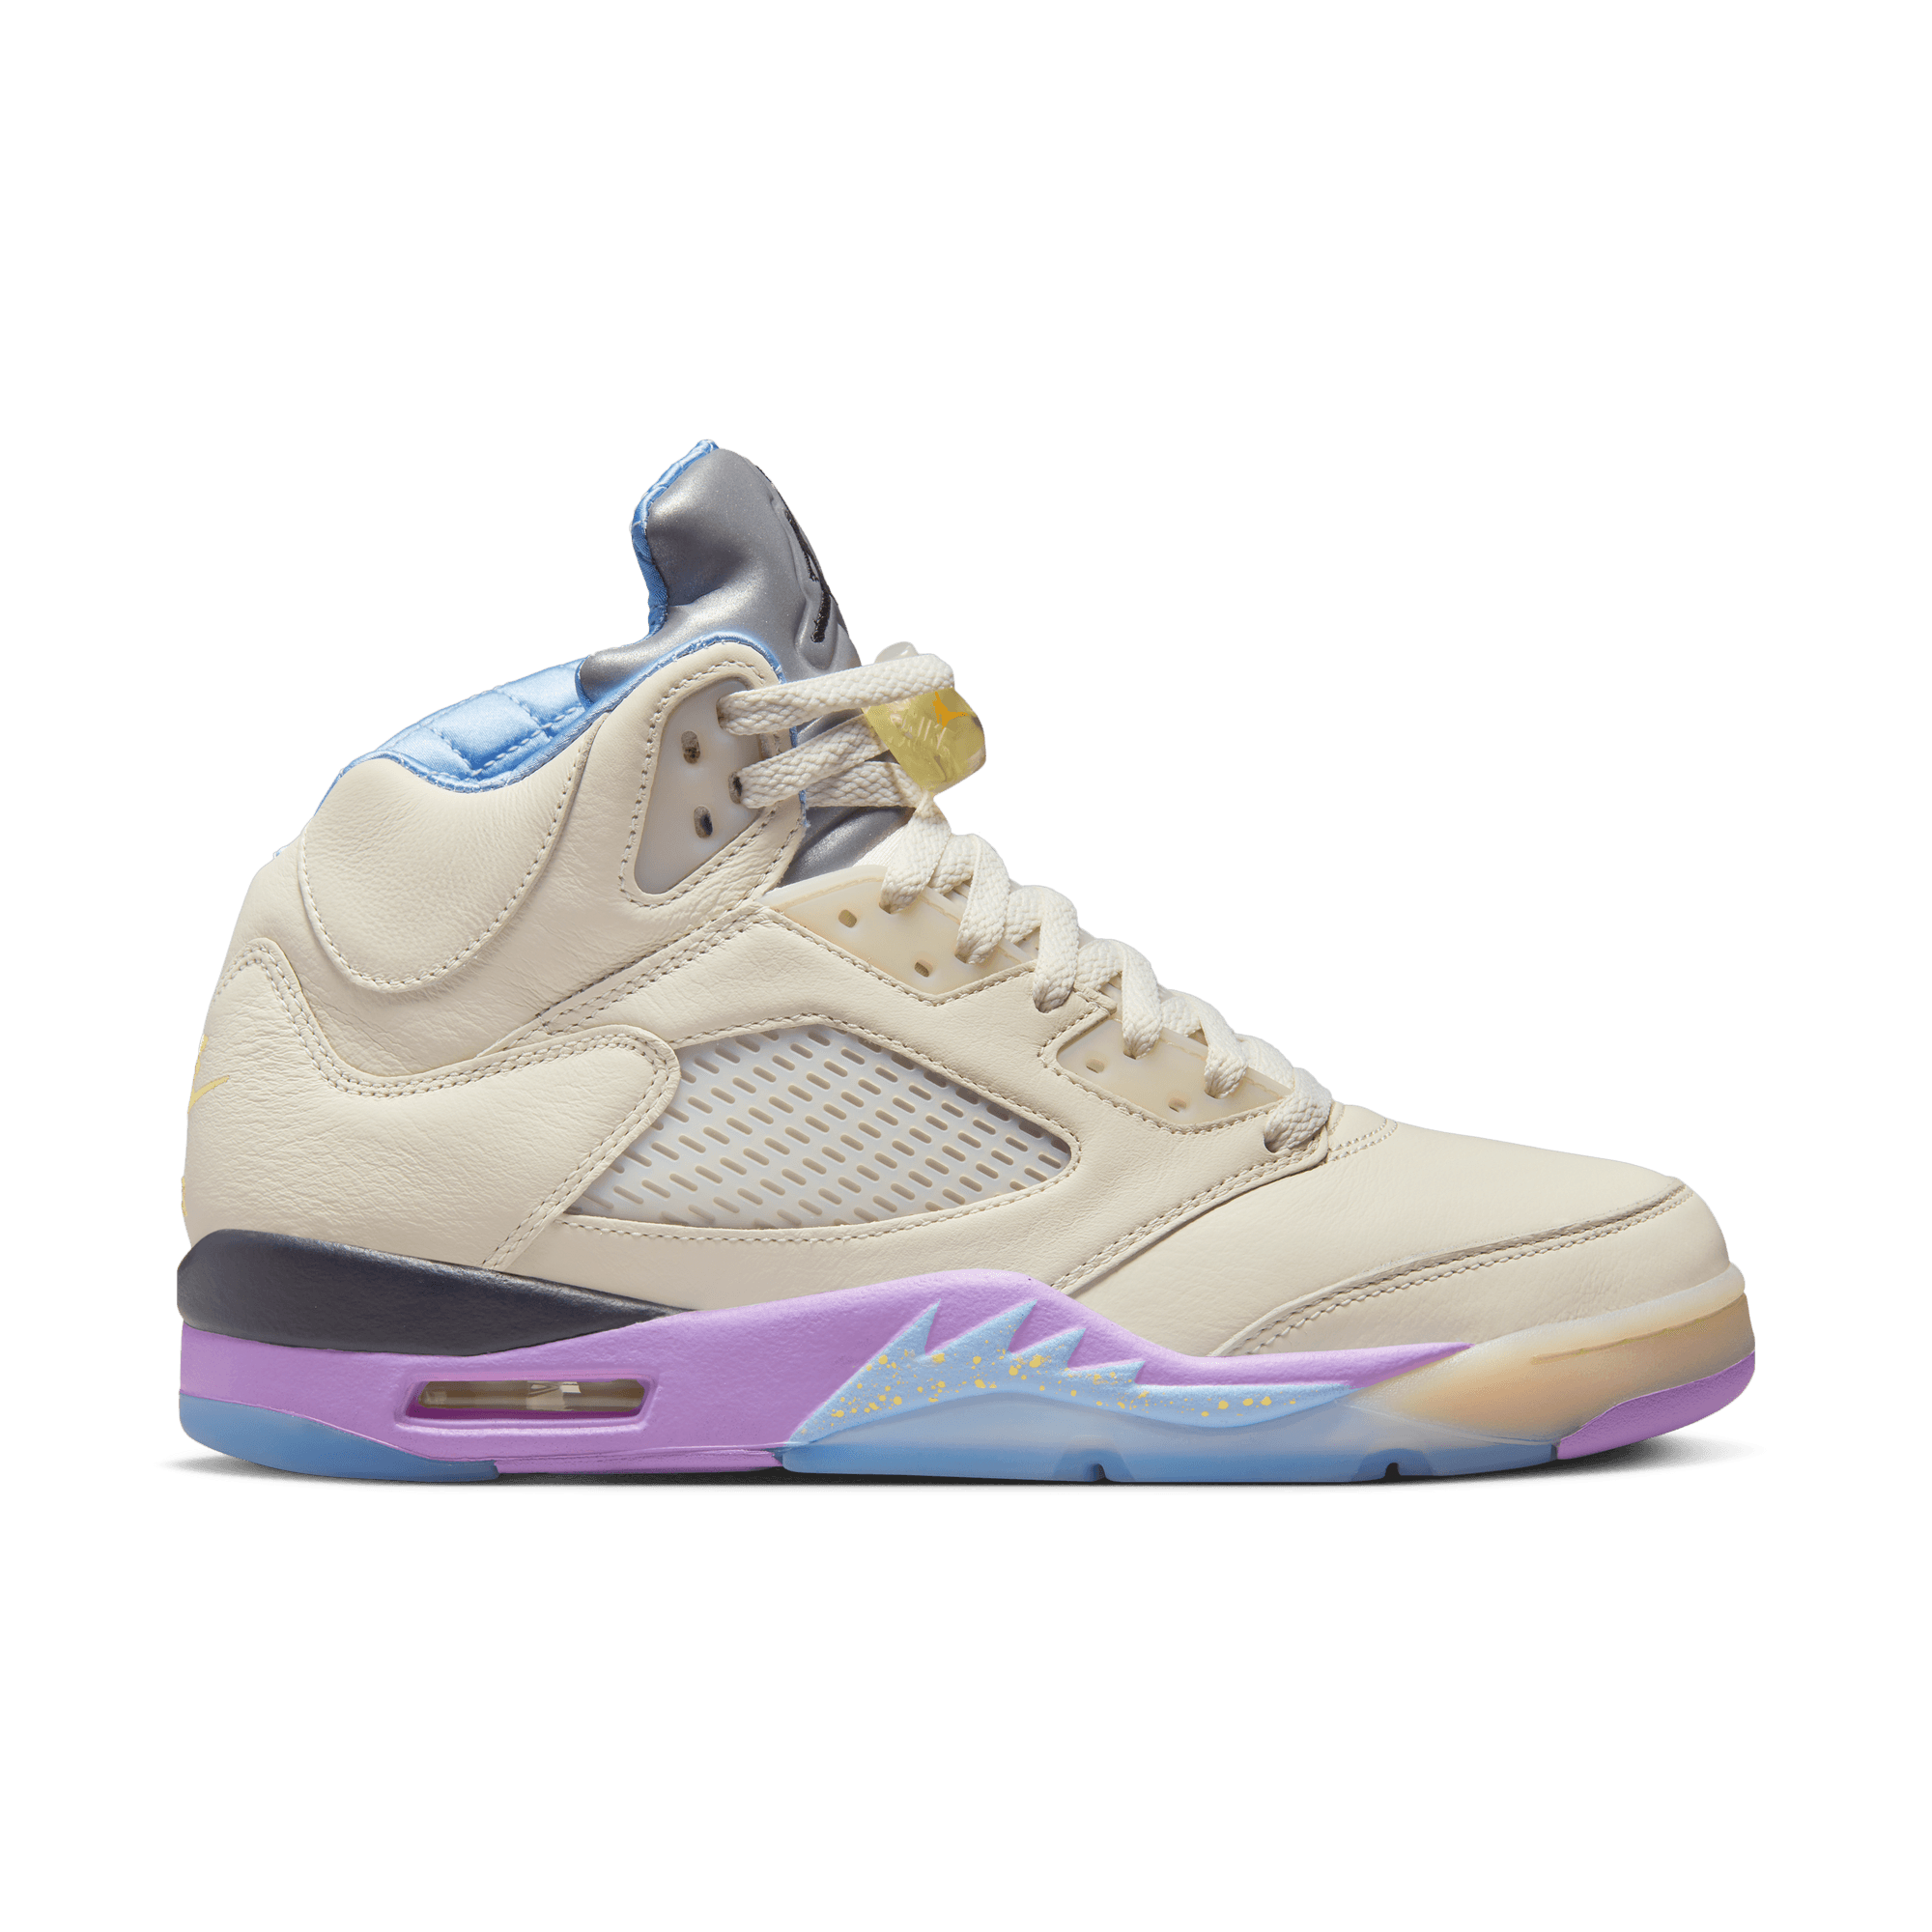 DJ Khaled Air Jordan 5 Sneaker Collection FIRST LOOK 